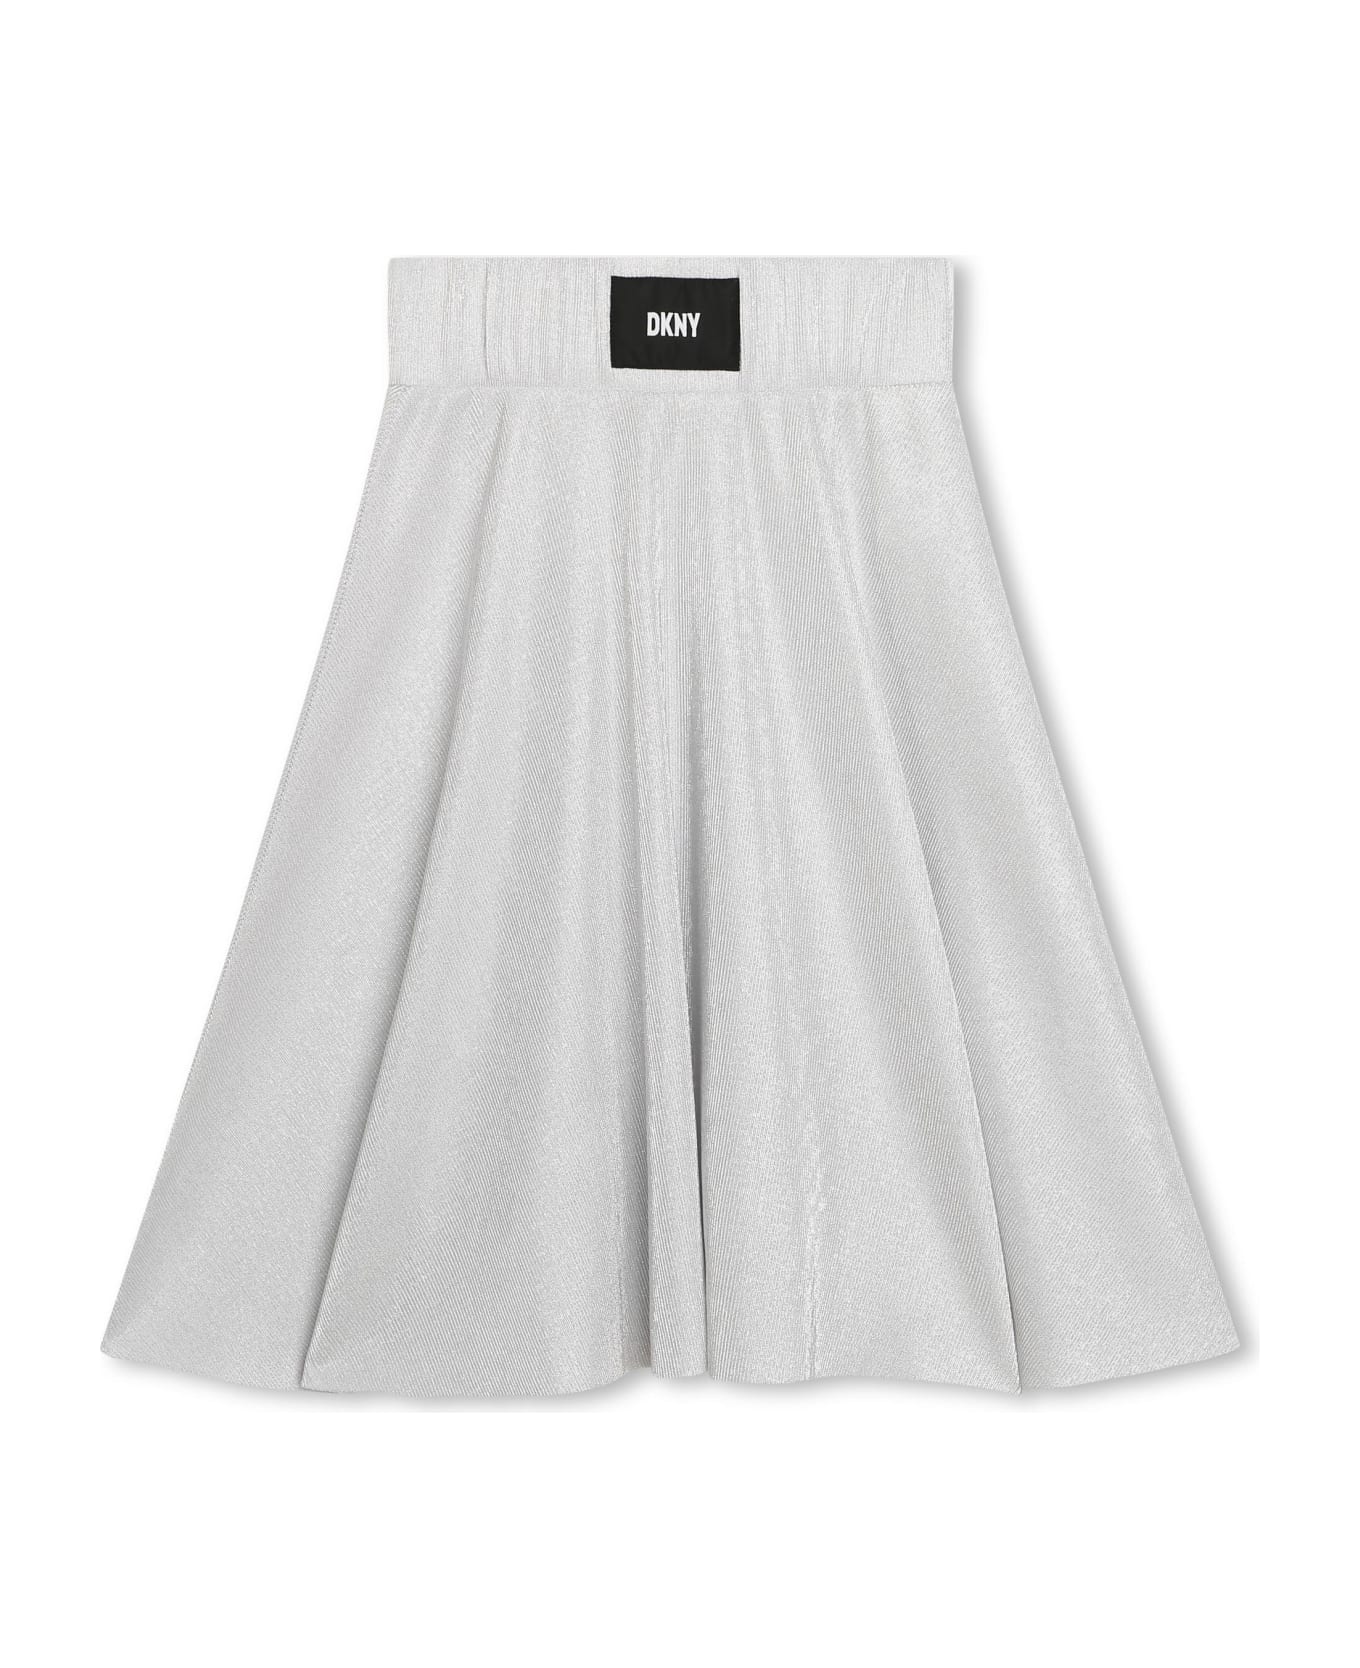 DKNY Skirt With Logo - Gray ボトムス